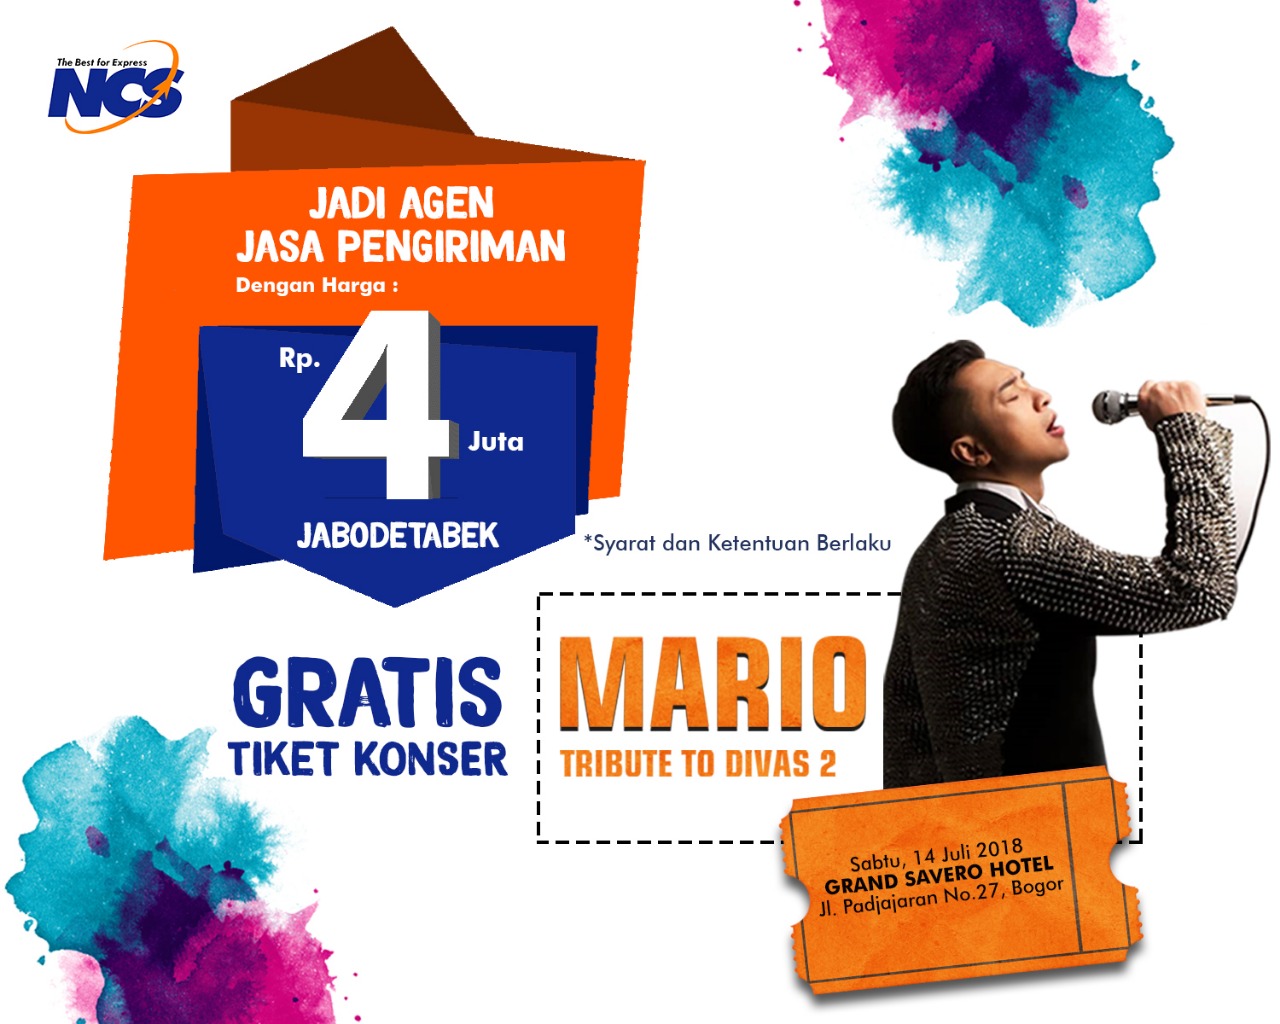 Gabung Jadi Agen NCS, Gratis Tiket Konser Mario!